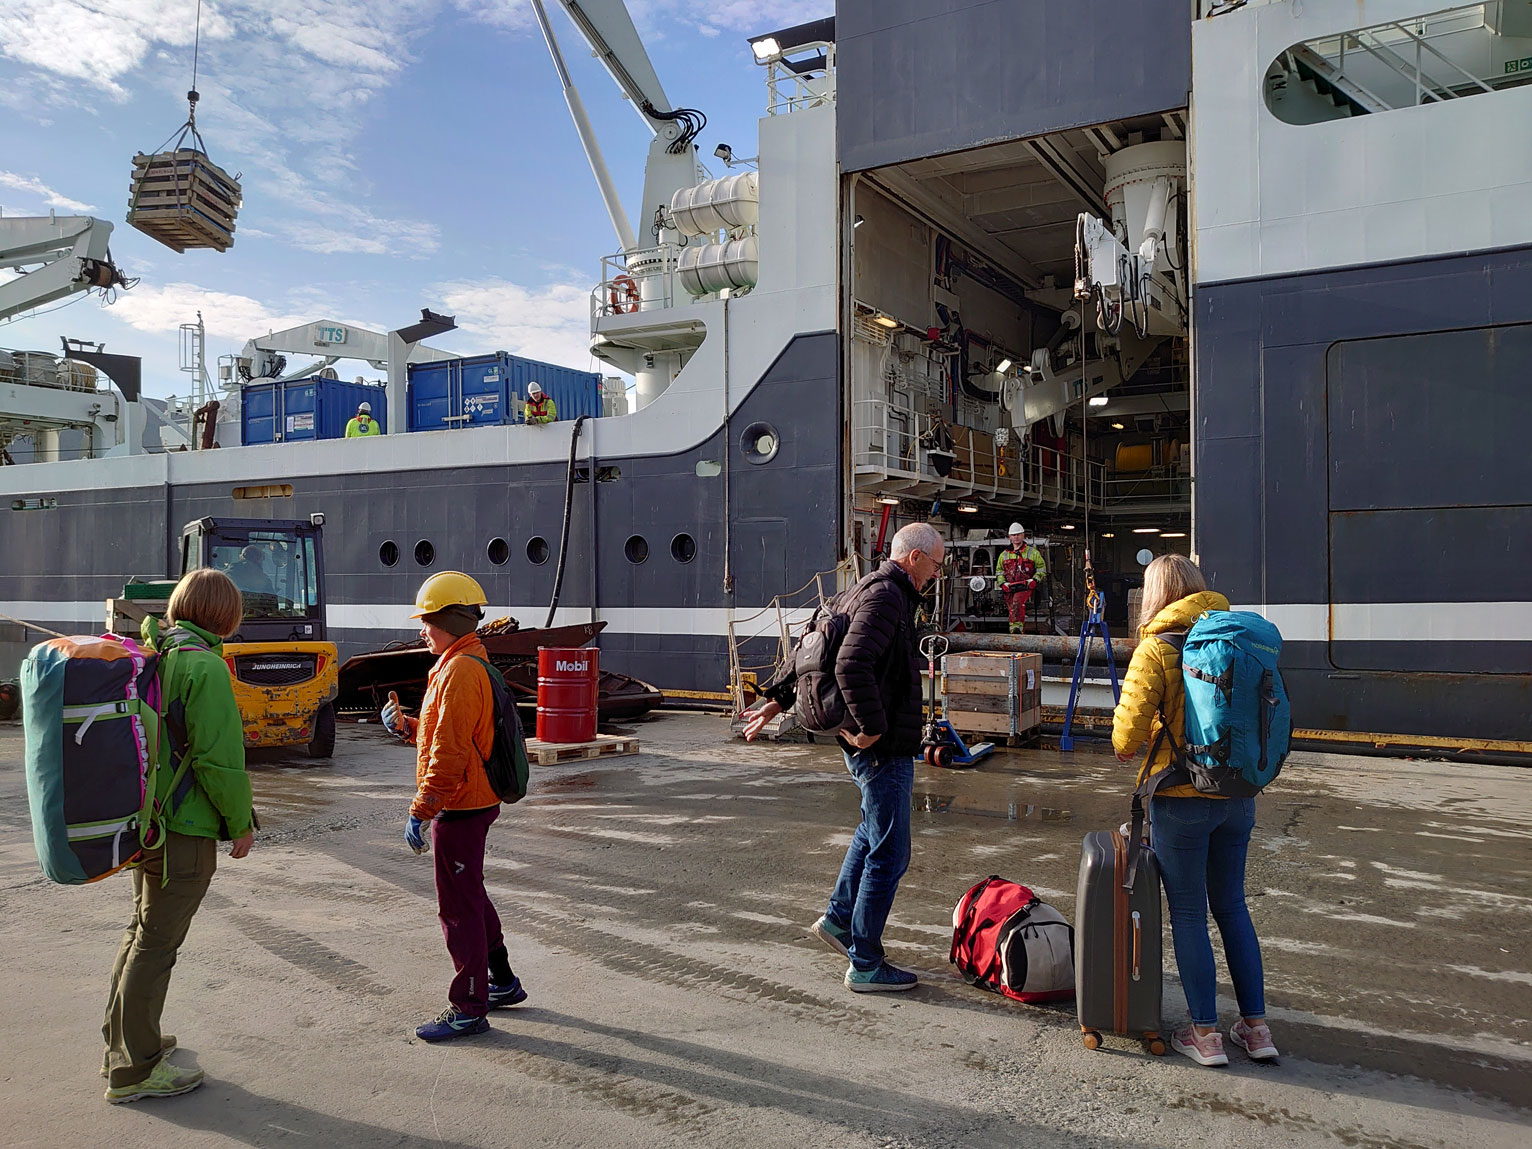 Bilde tatt på kaia i Tromsø. Viser toktdeltakere på vei om bord med baggasje og utstyr som skal være med.